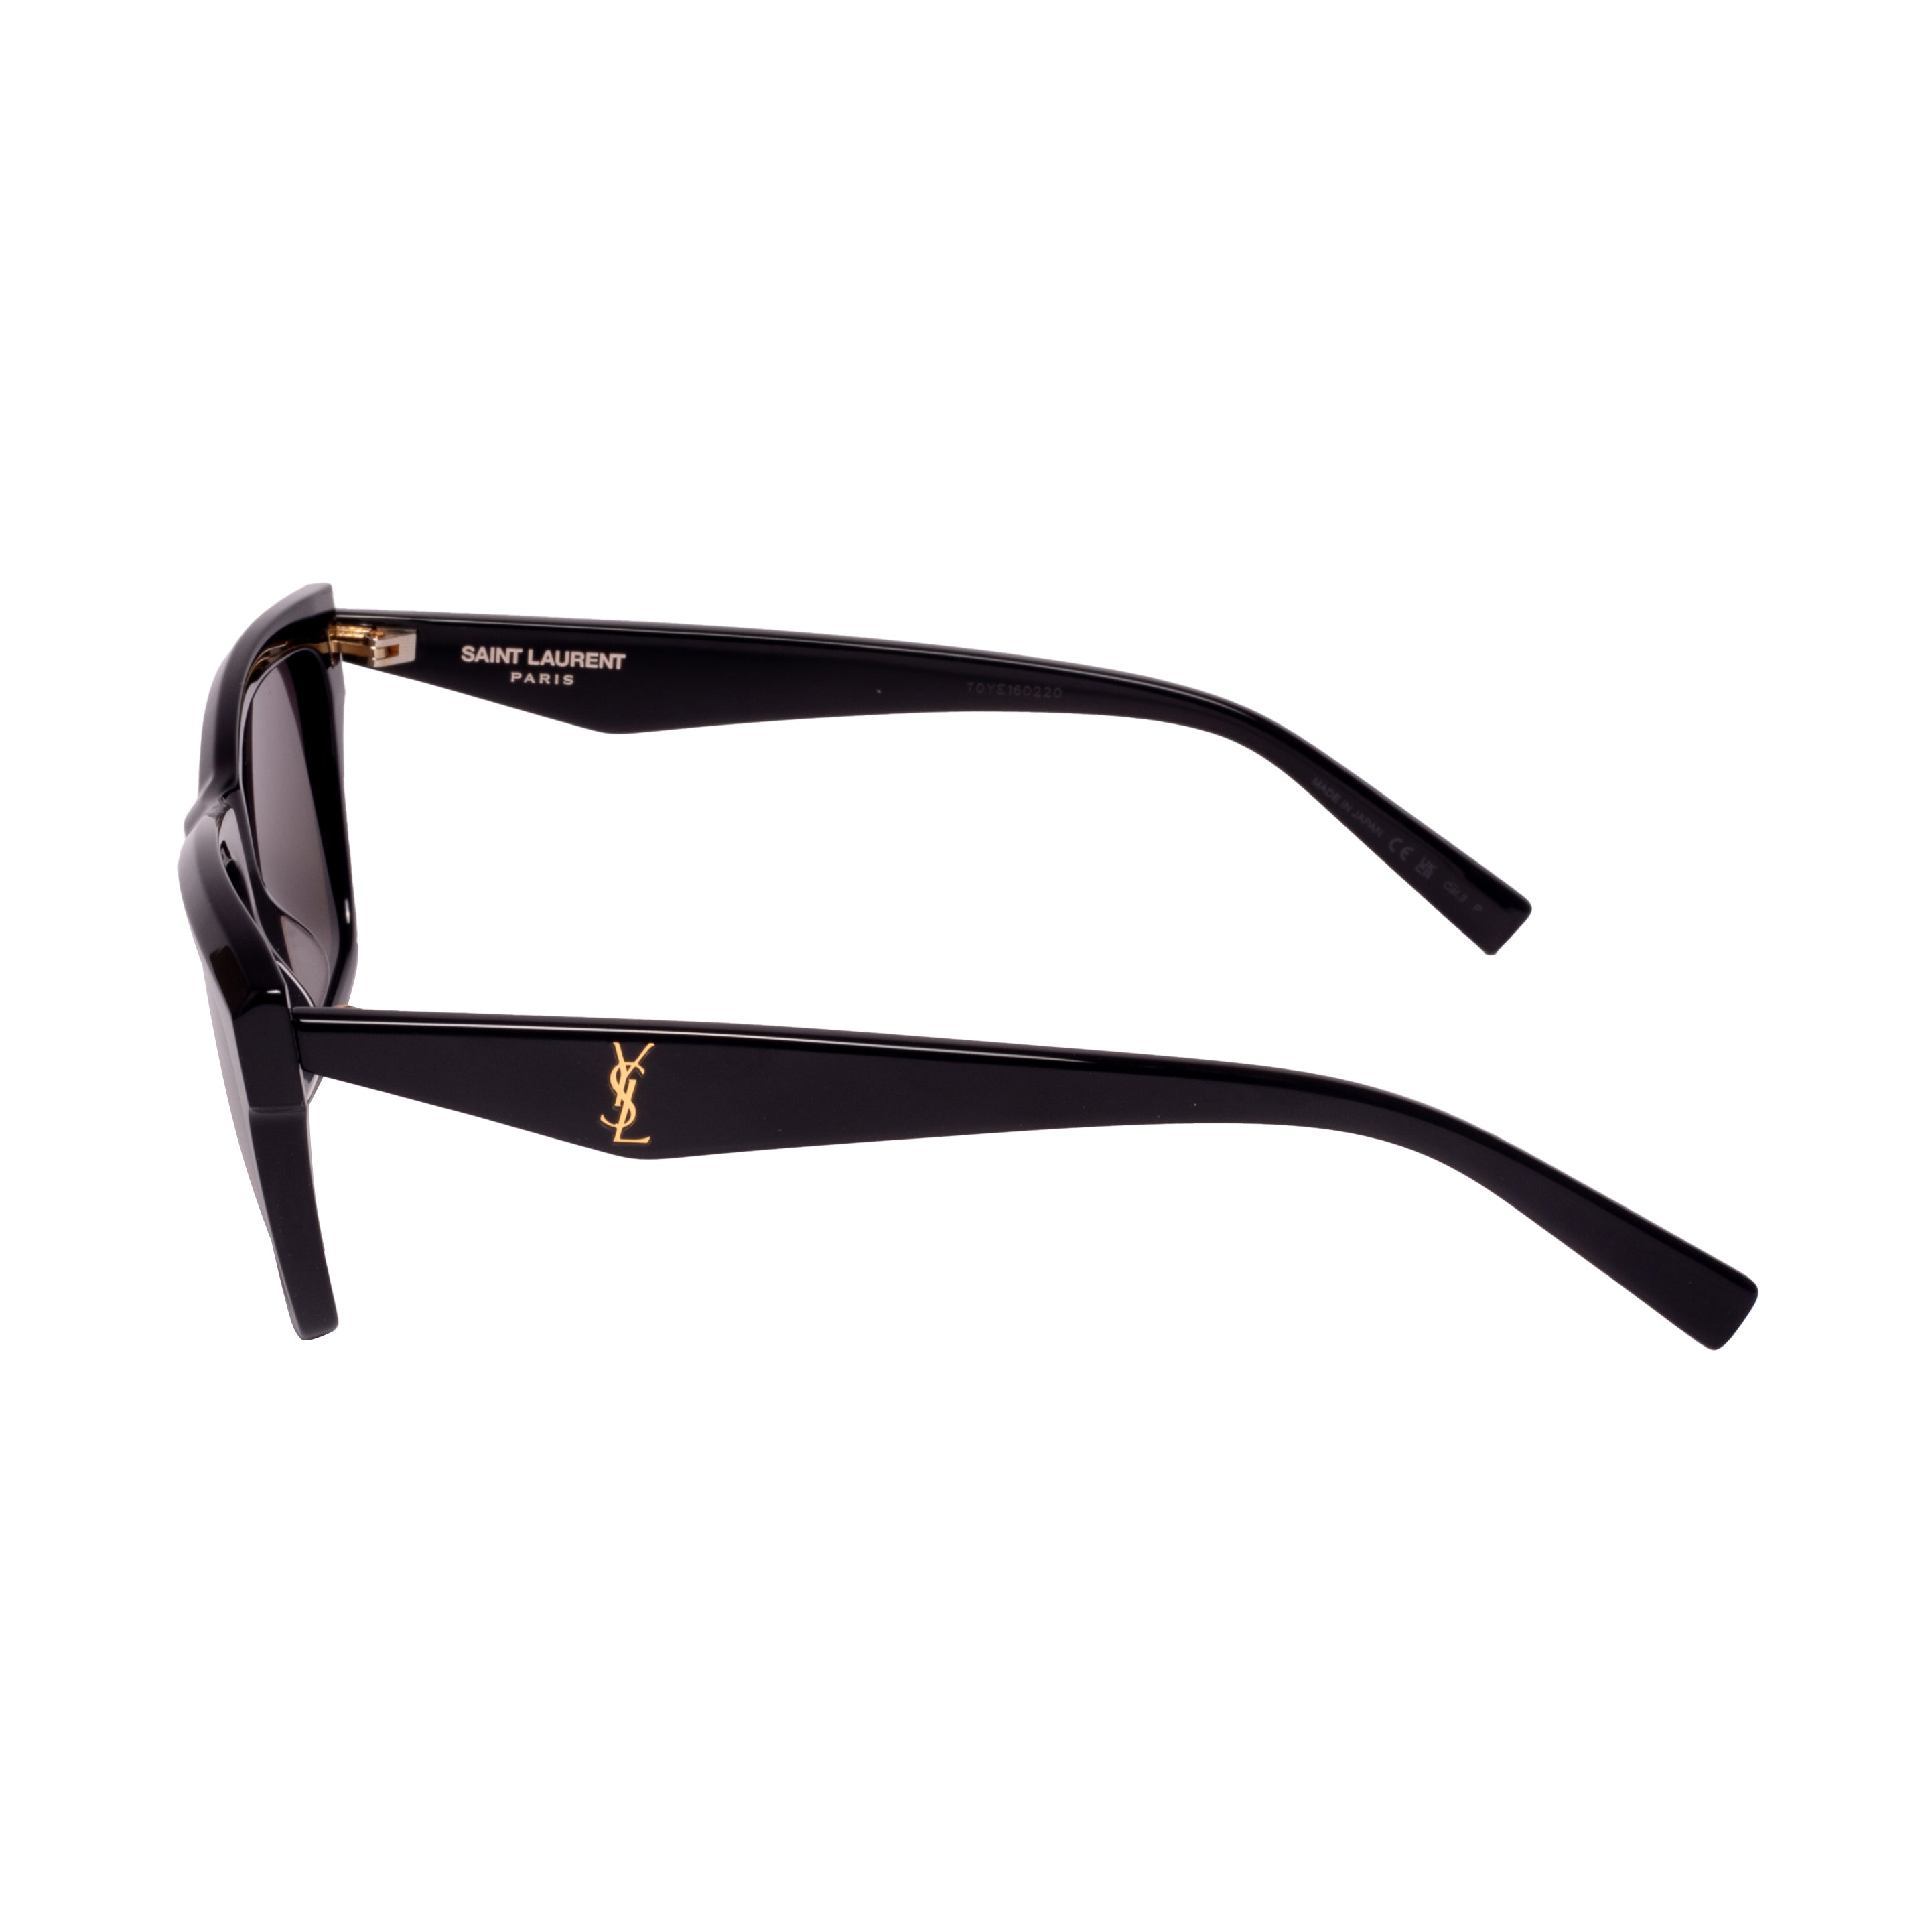 Saint Laurent-SL M104-56-004 Sunglasses - Premium Sunglasses from Saint Laurent - Just Rs. 27900! Shop now at Laxmi Opticians